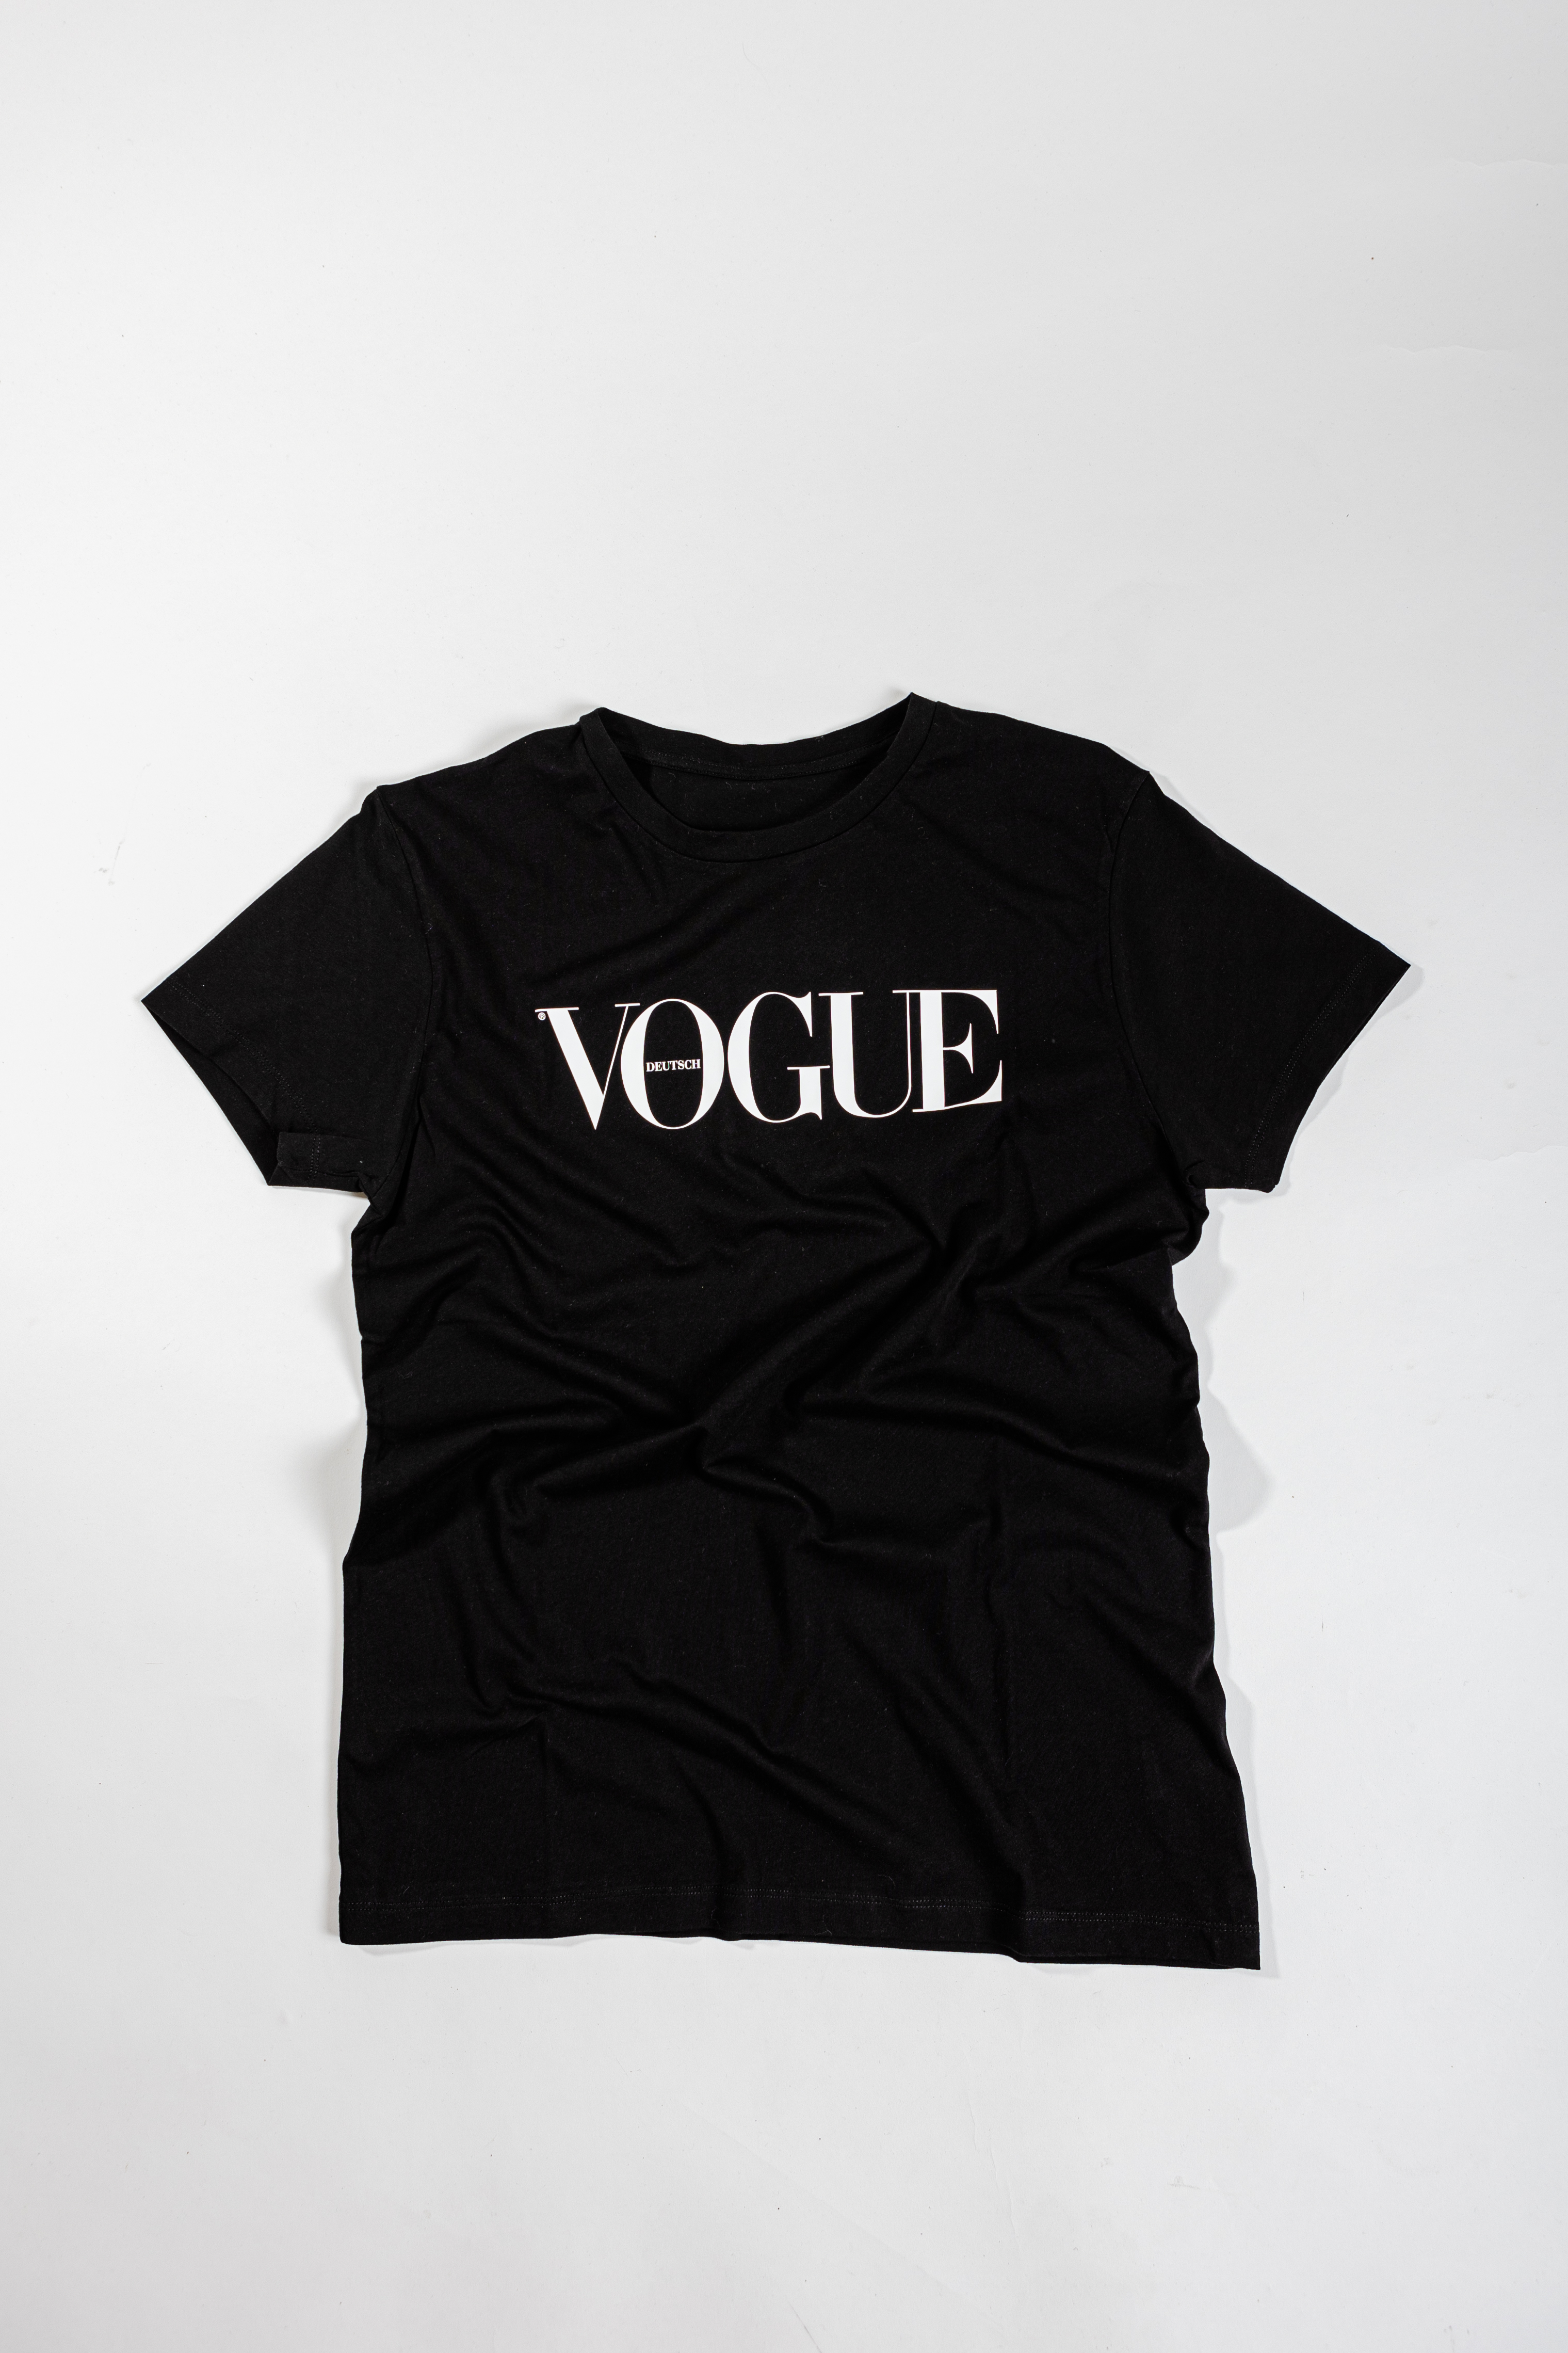 VOGUE T-Shirt schwarz S